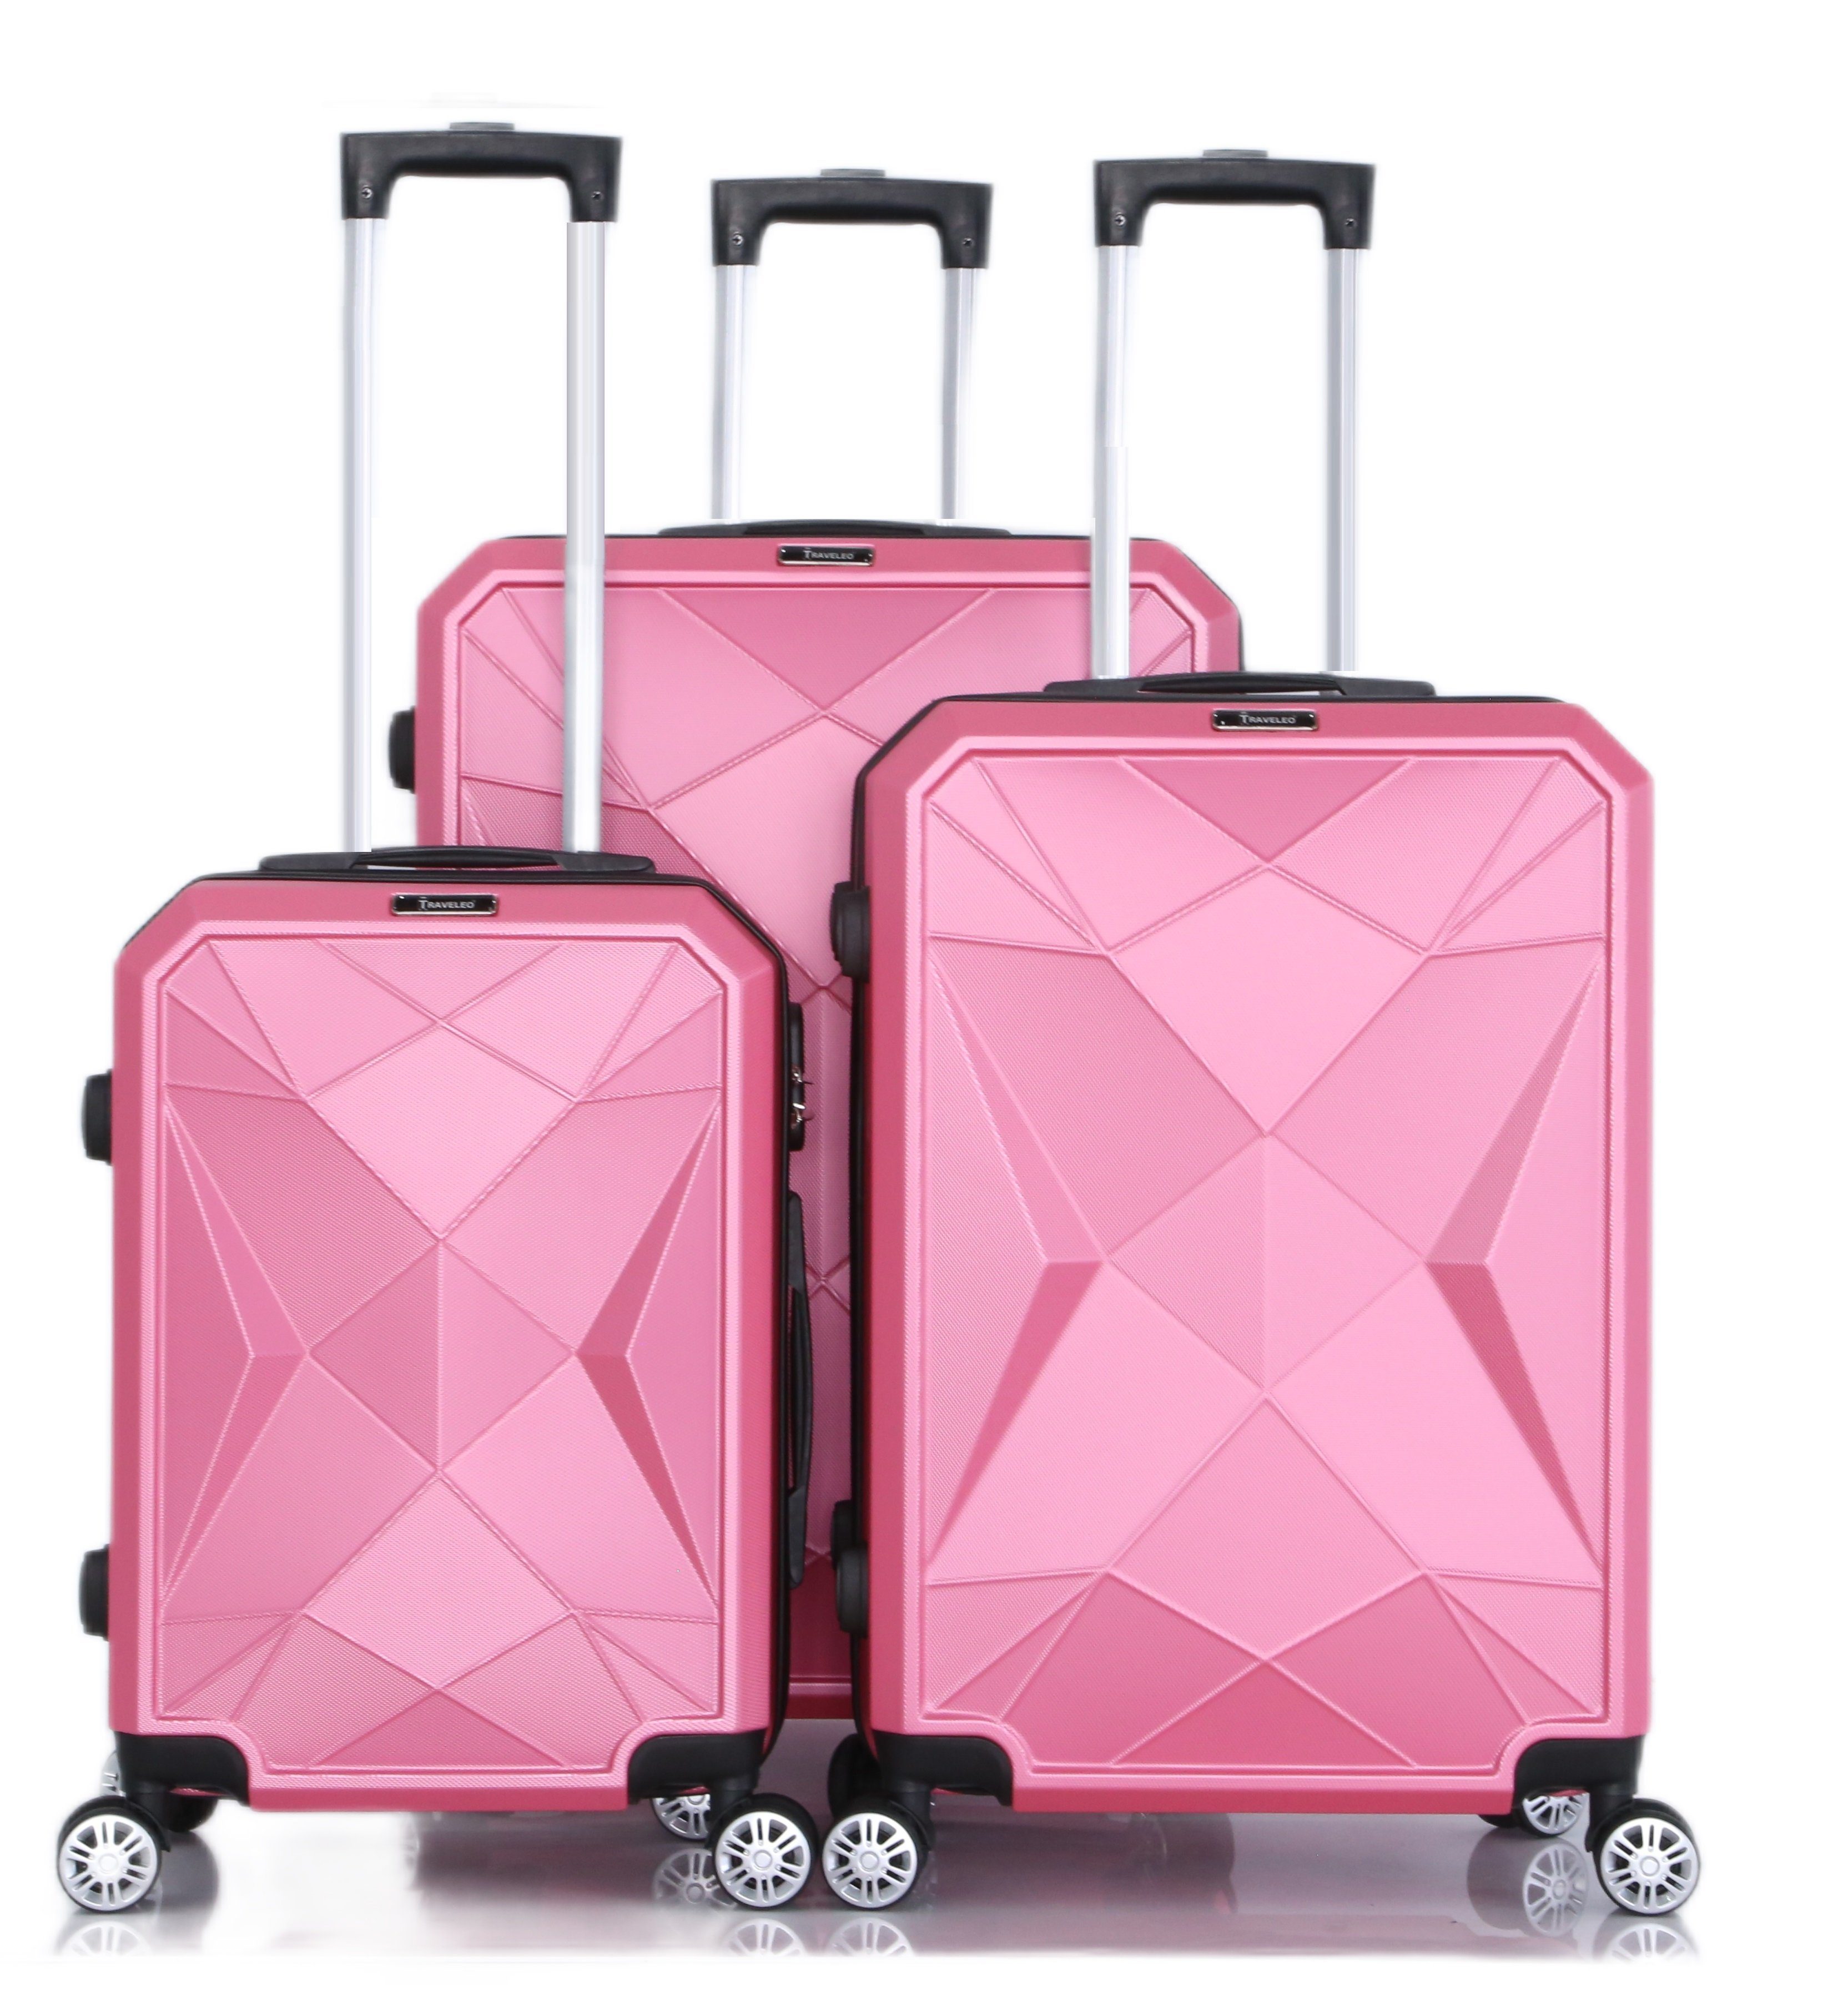 Cheffinger Kofferset Reisekoffer Koffer 3-teilig Kofferset Handgepäck Gepäck Reisetasche Pink | Trolley-Sets